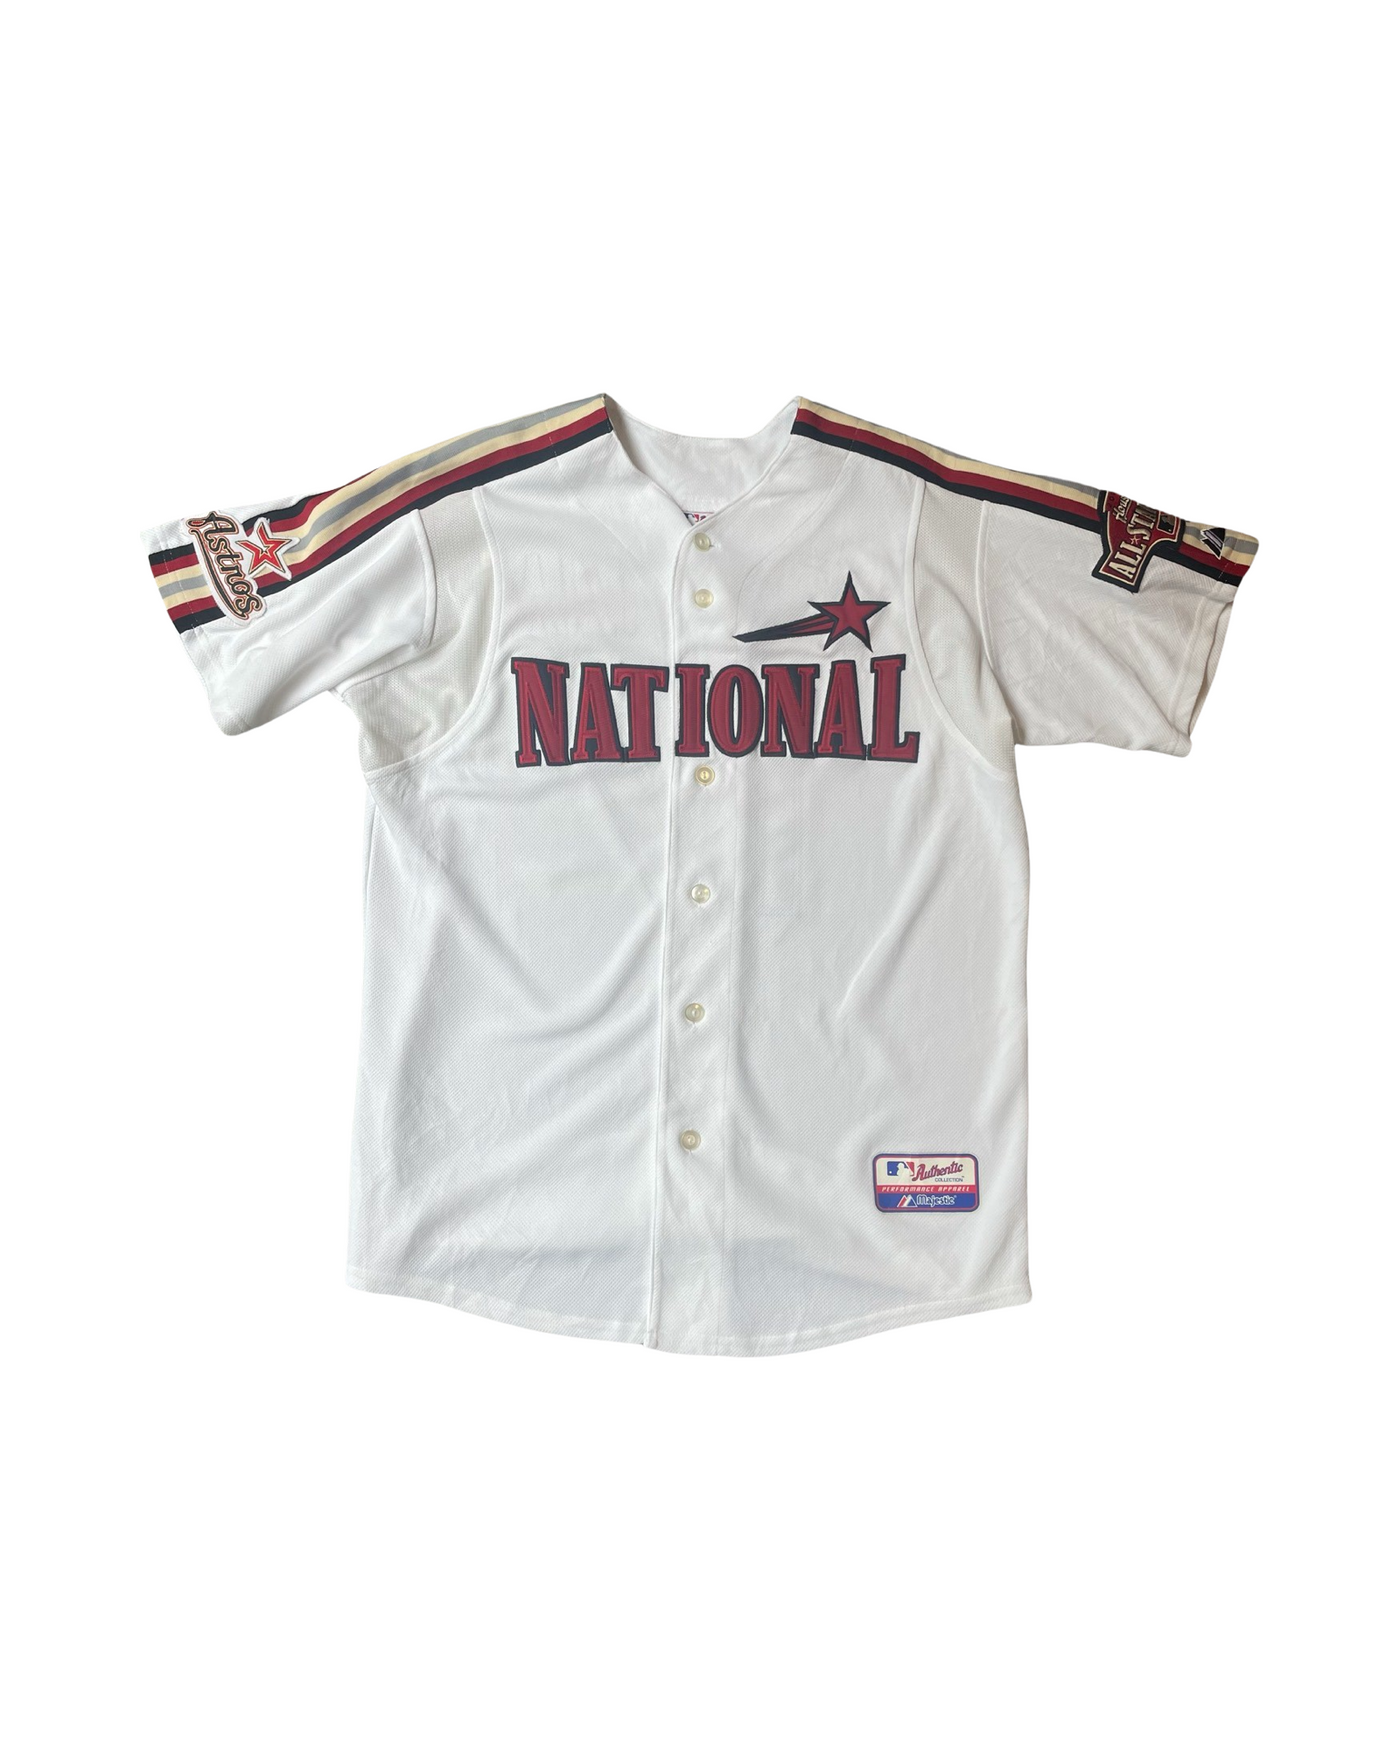 Vintage MBL National Astros Jersey